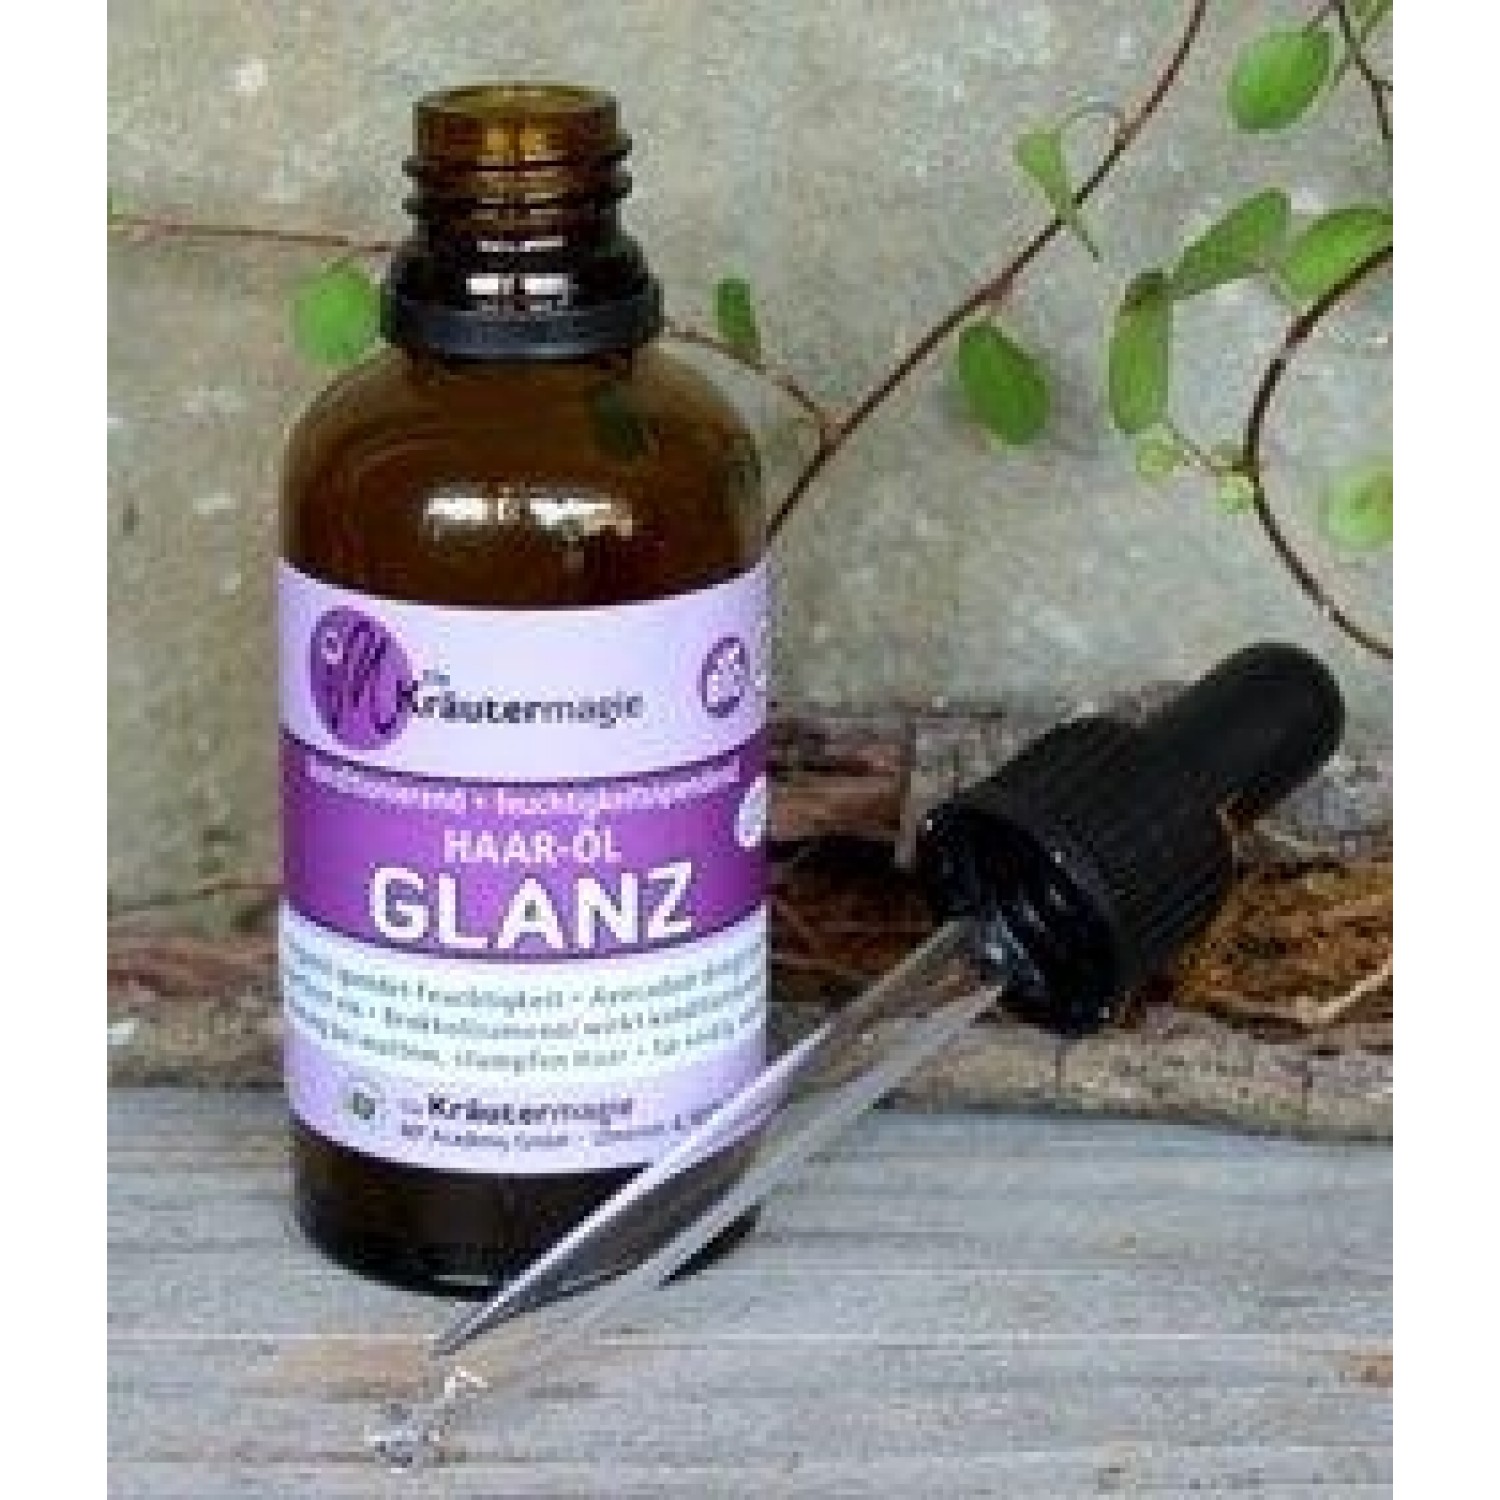 Vegan Hair oil SHINE for dull & stressed hair | Kraeutermagie